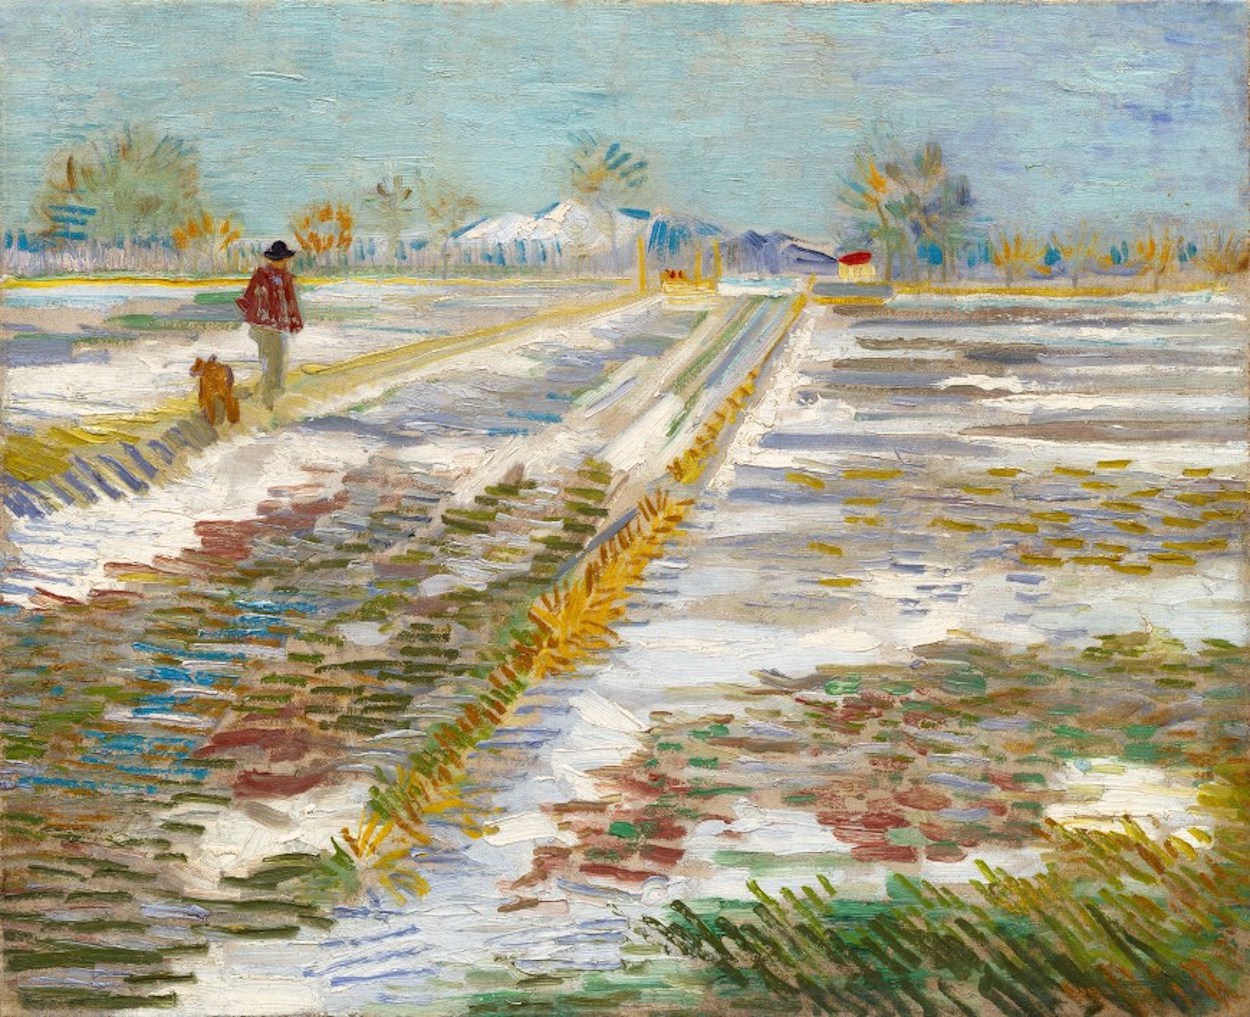 Peisaj cu zăpadă by Vincent van Gogh - 1888 - 38 x 46 cm 